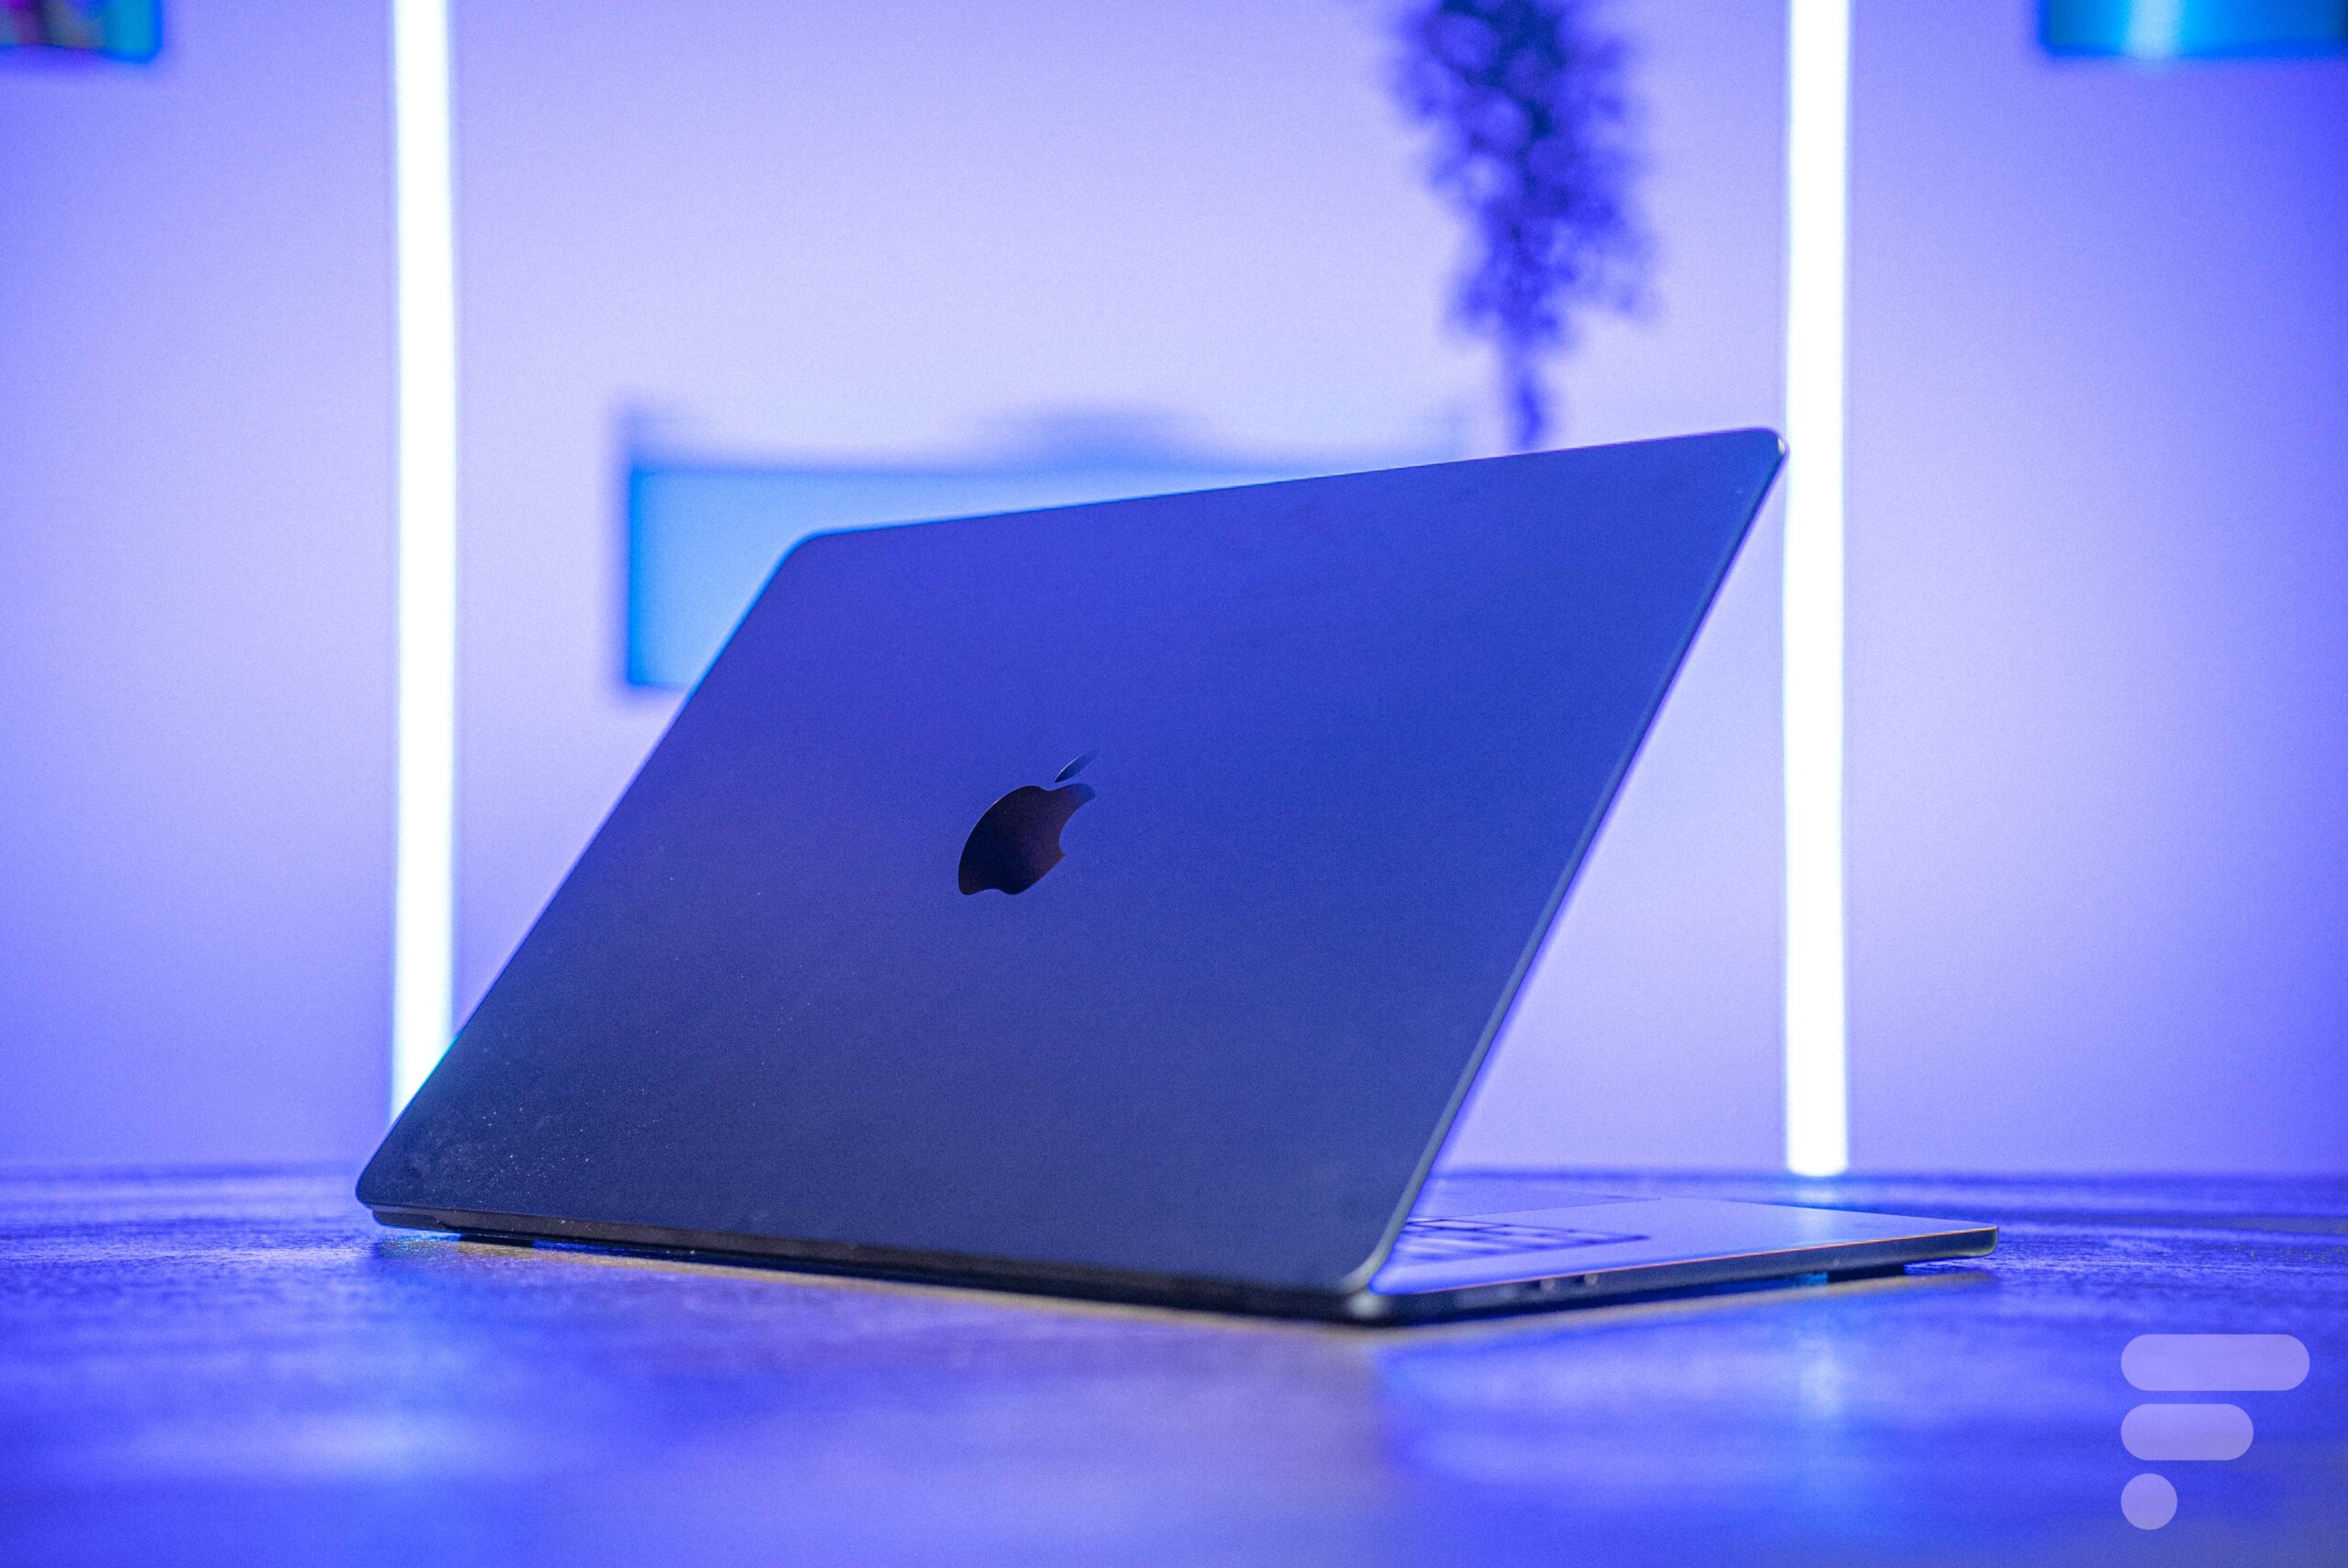 MacBook Air 15 pouces : Apple muscle la rentrée avec son ordinateur  tout-puissant